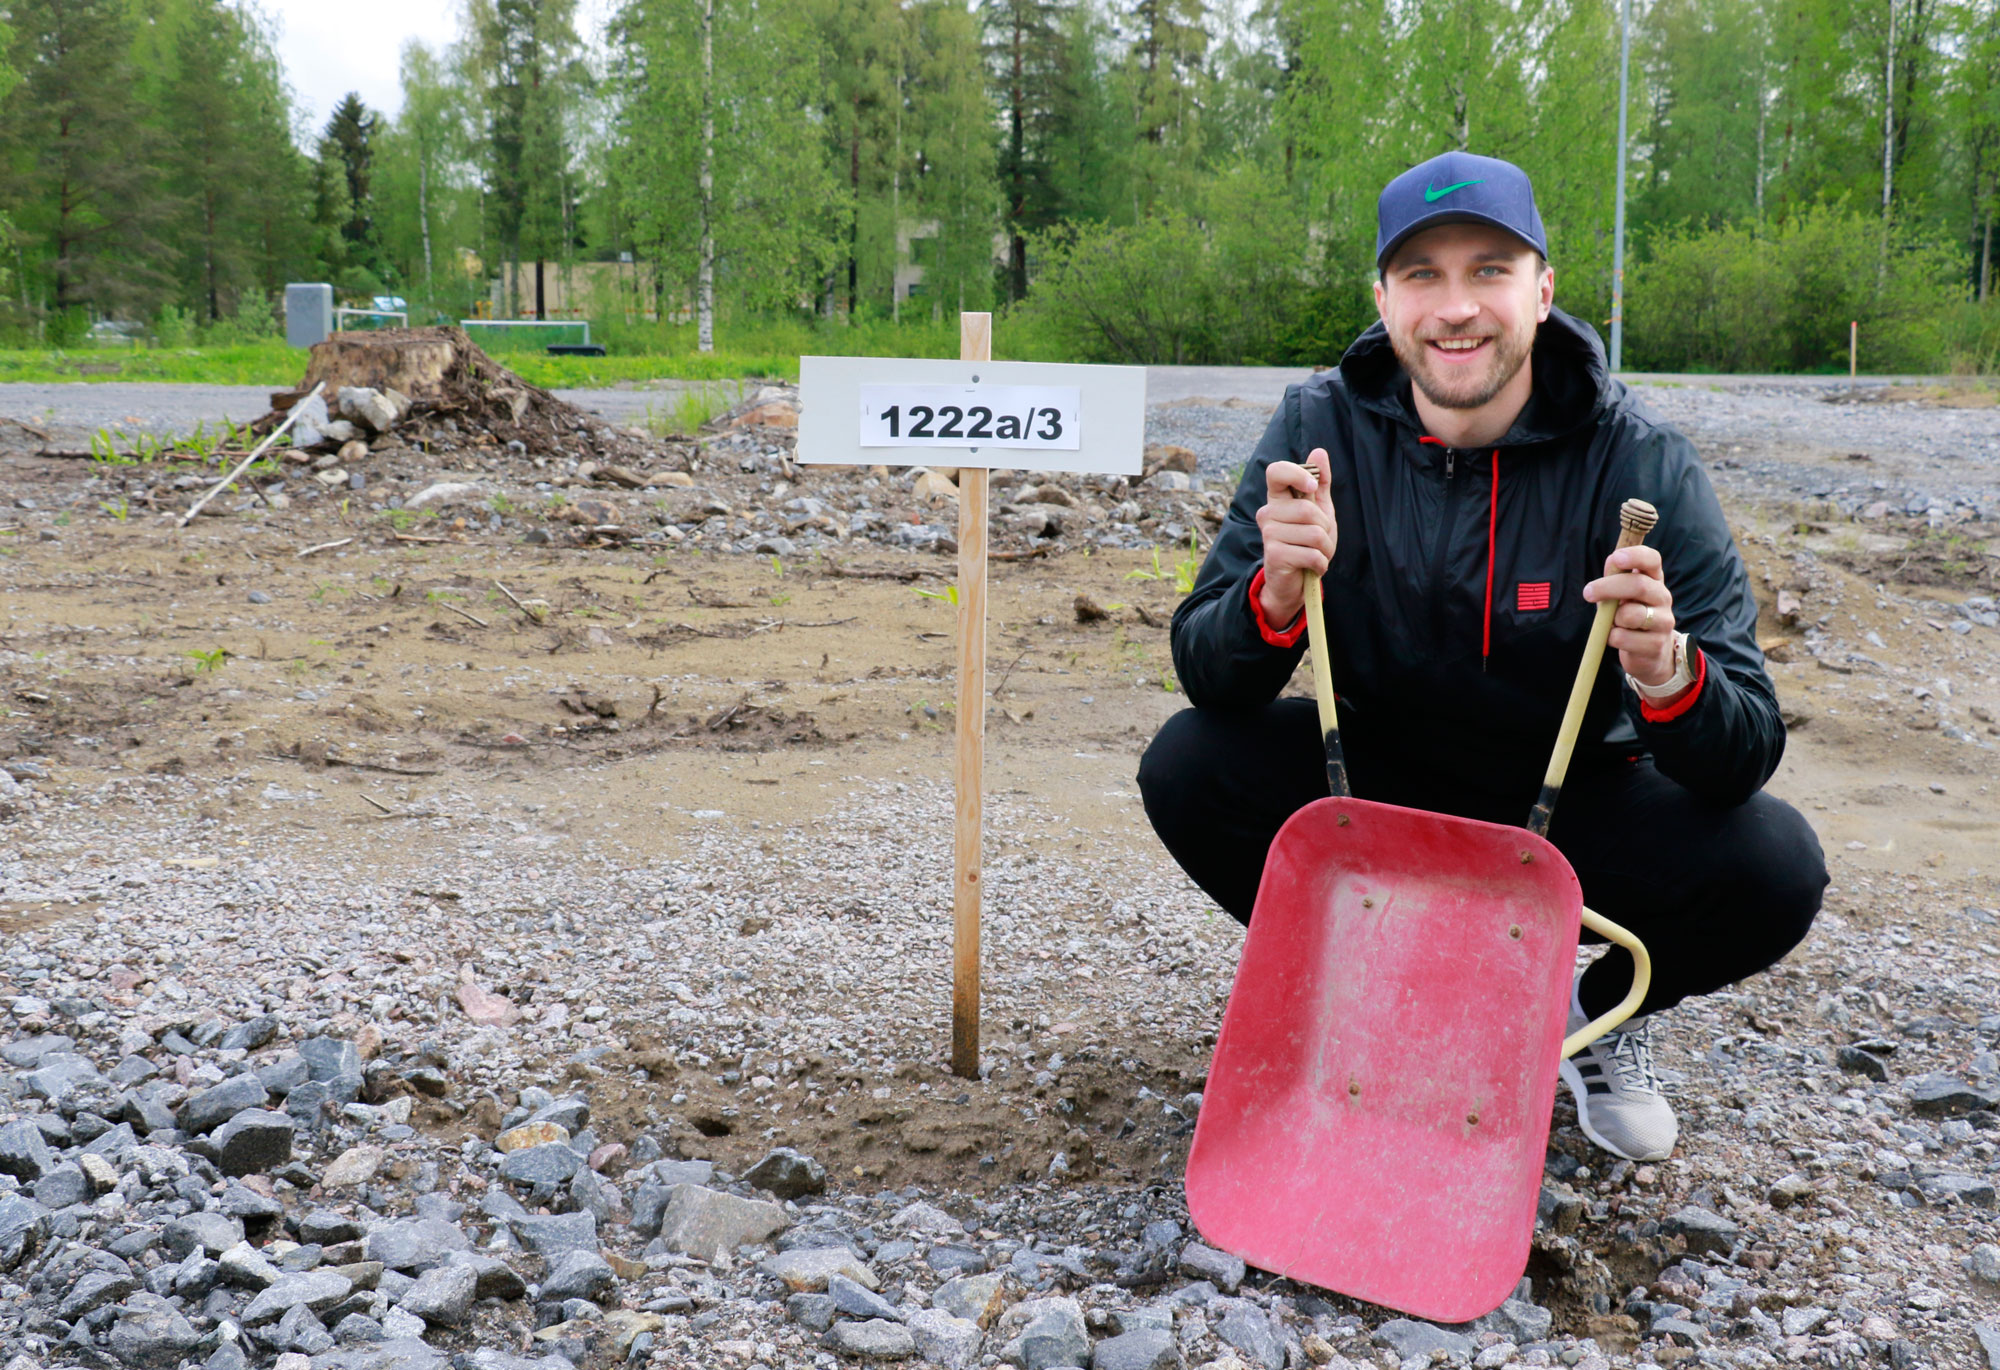 Jääkiekkoilija Eero Savilahden ja hänen Heidi-kihlattunsa koti nousee Mannakorven kaupunkipientaloalueelle. Rakennustyöt alkanevat loppusyksyllä, mutta muuttoon on vielä aikaa. Savilahti palaa elokuussa Ruotsiin, jossa hänen pestinsä Nybro Vikings IF:n kanssa jatkuu.